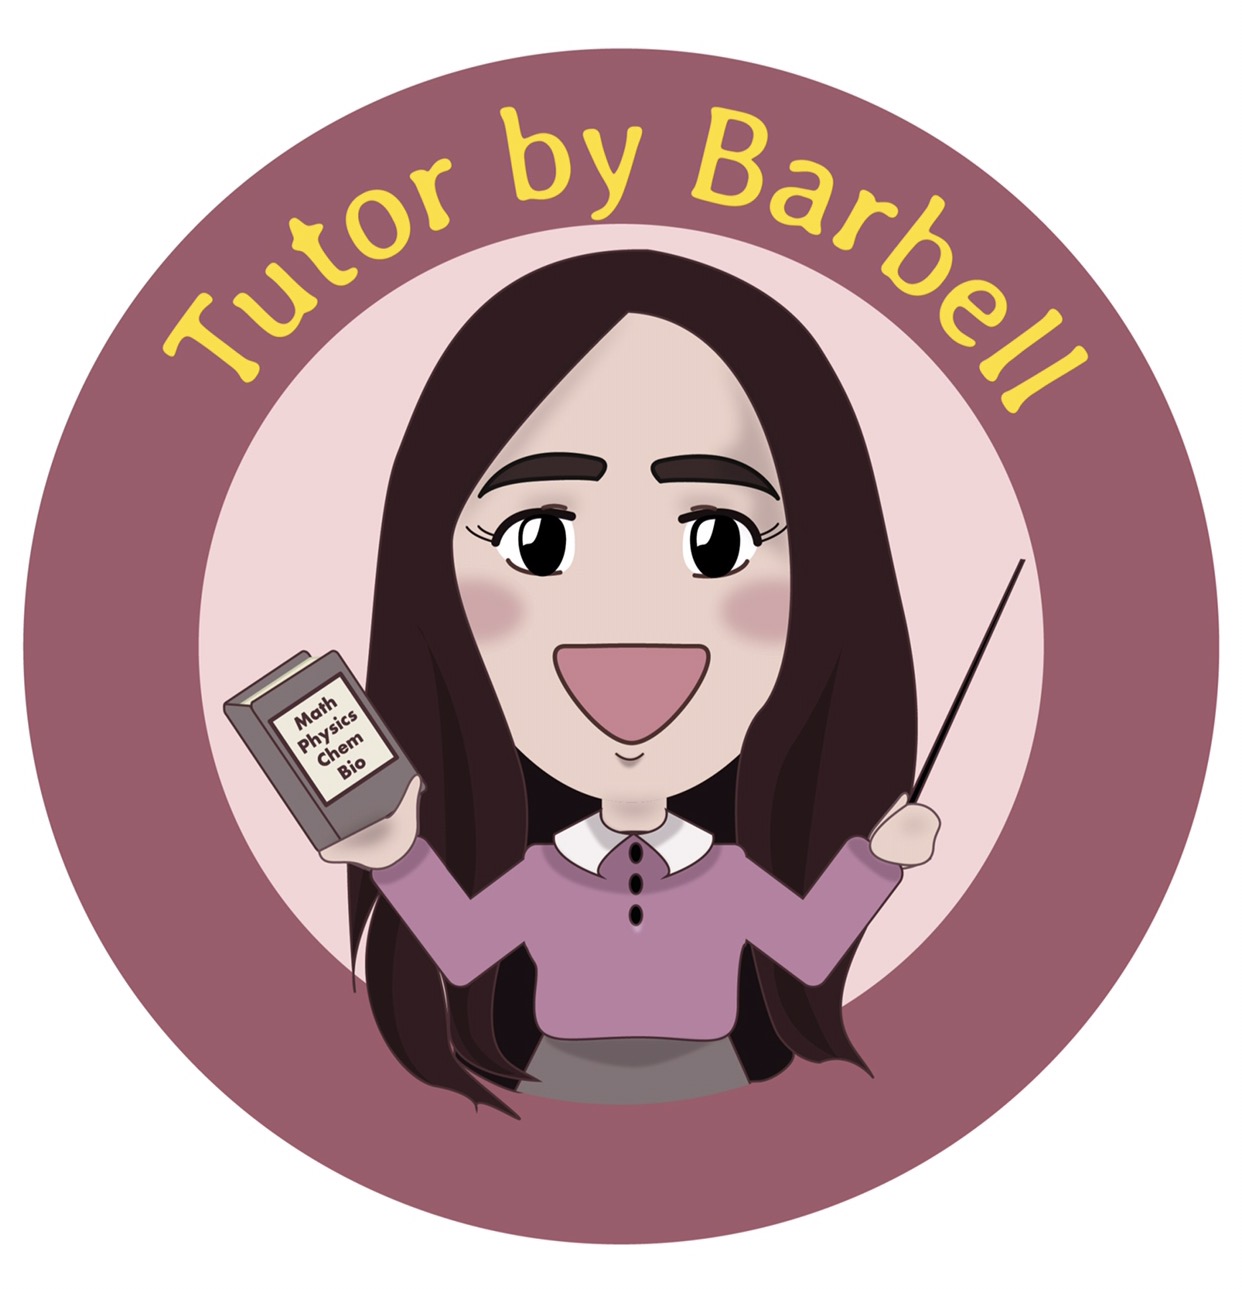 Tutor By Barbell จุฬาติวเตอร์ รับสอนพิเศษตามสถานที่ต่างๆ สอนตรงจุดเข้าใจง่าย เรียนแล้วช่วยให้เกรดดีขึ้น